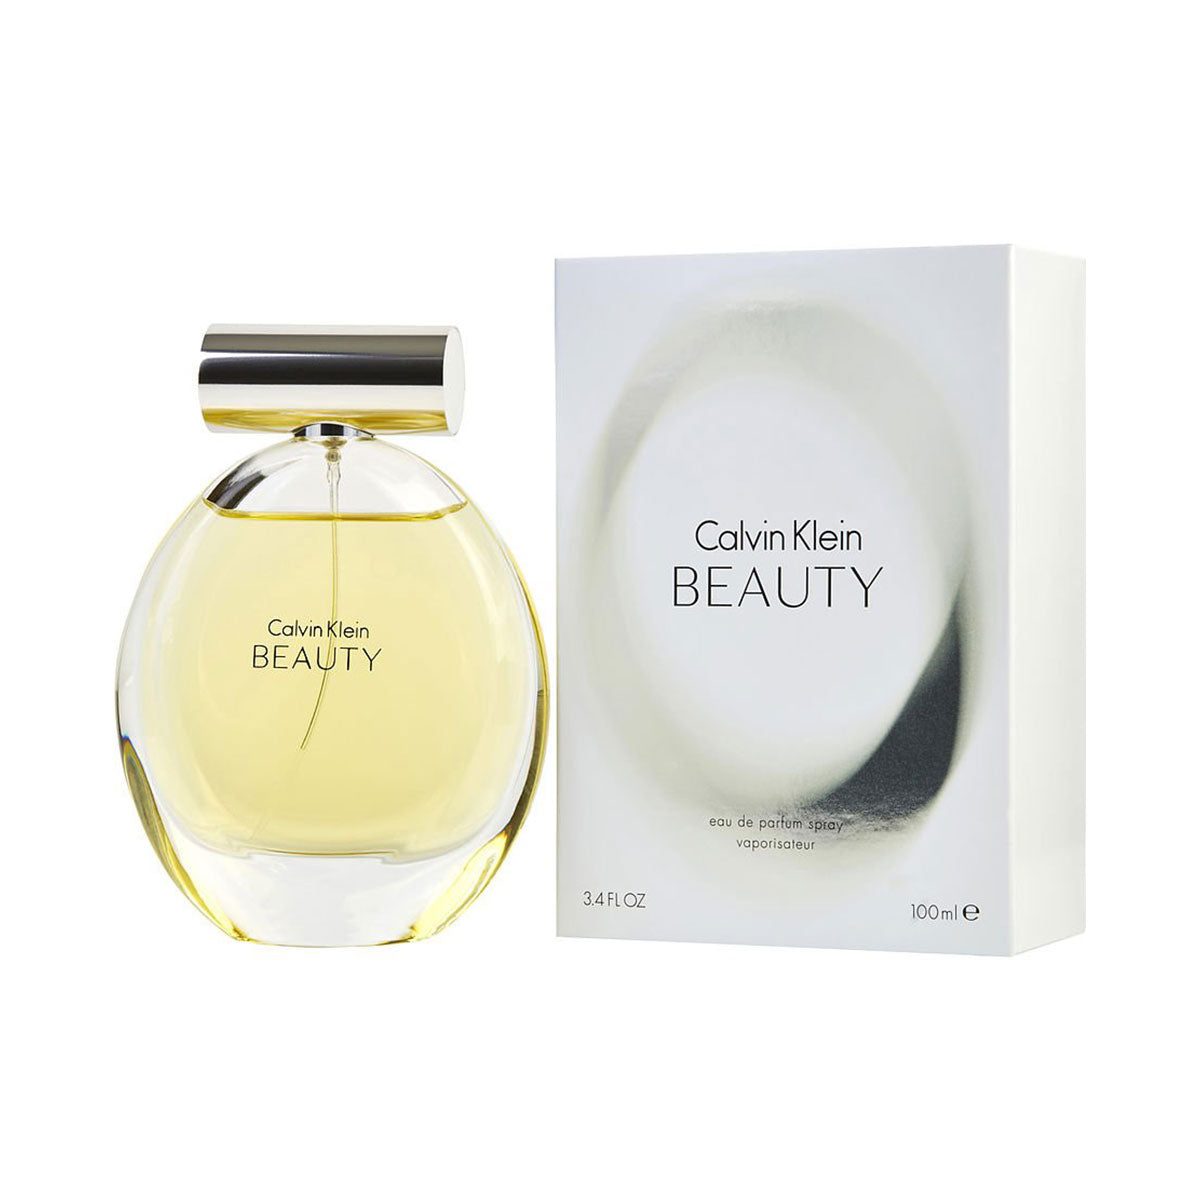 Parfums Beauty de la marque Calvin Klein pour femme 